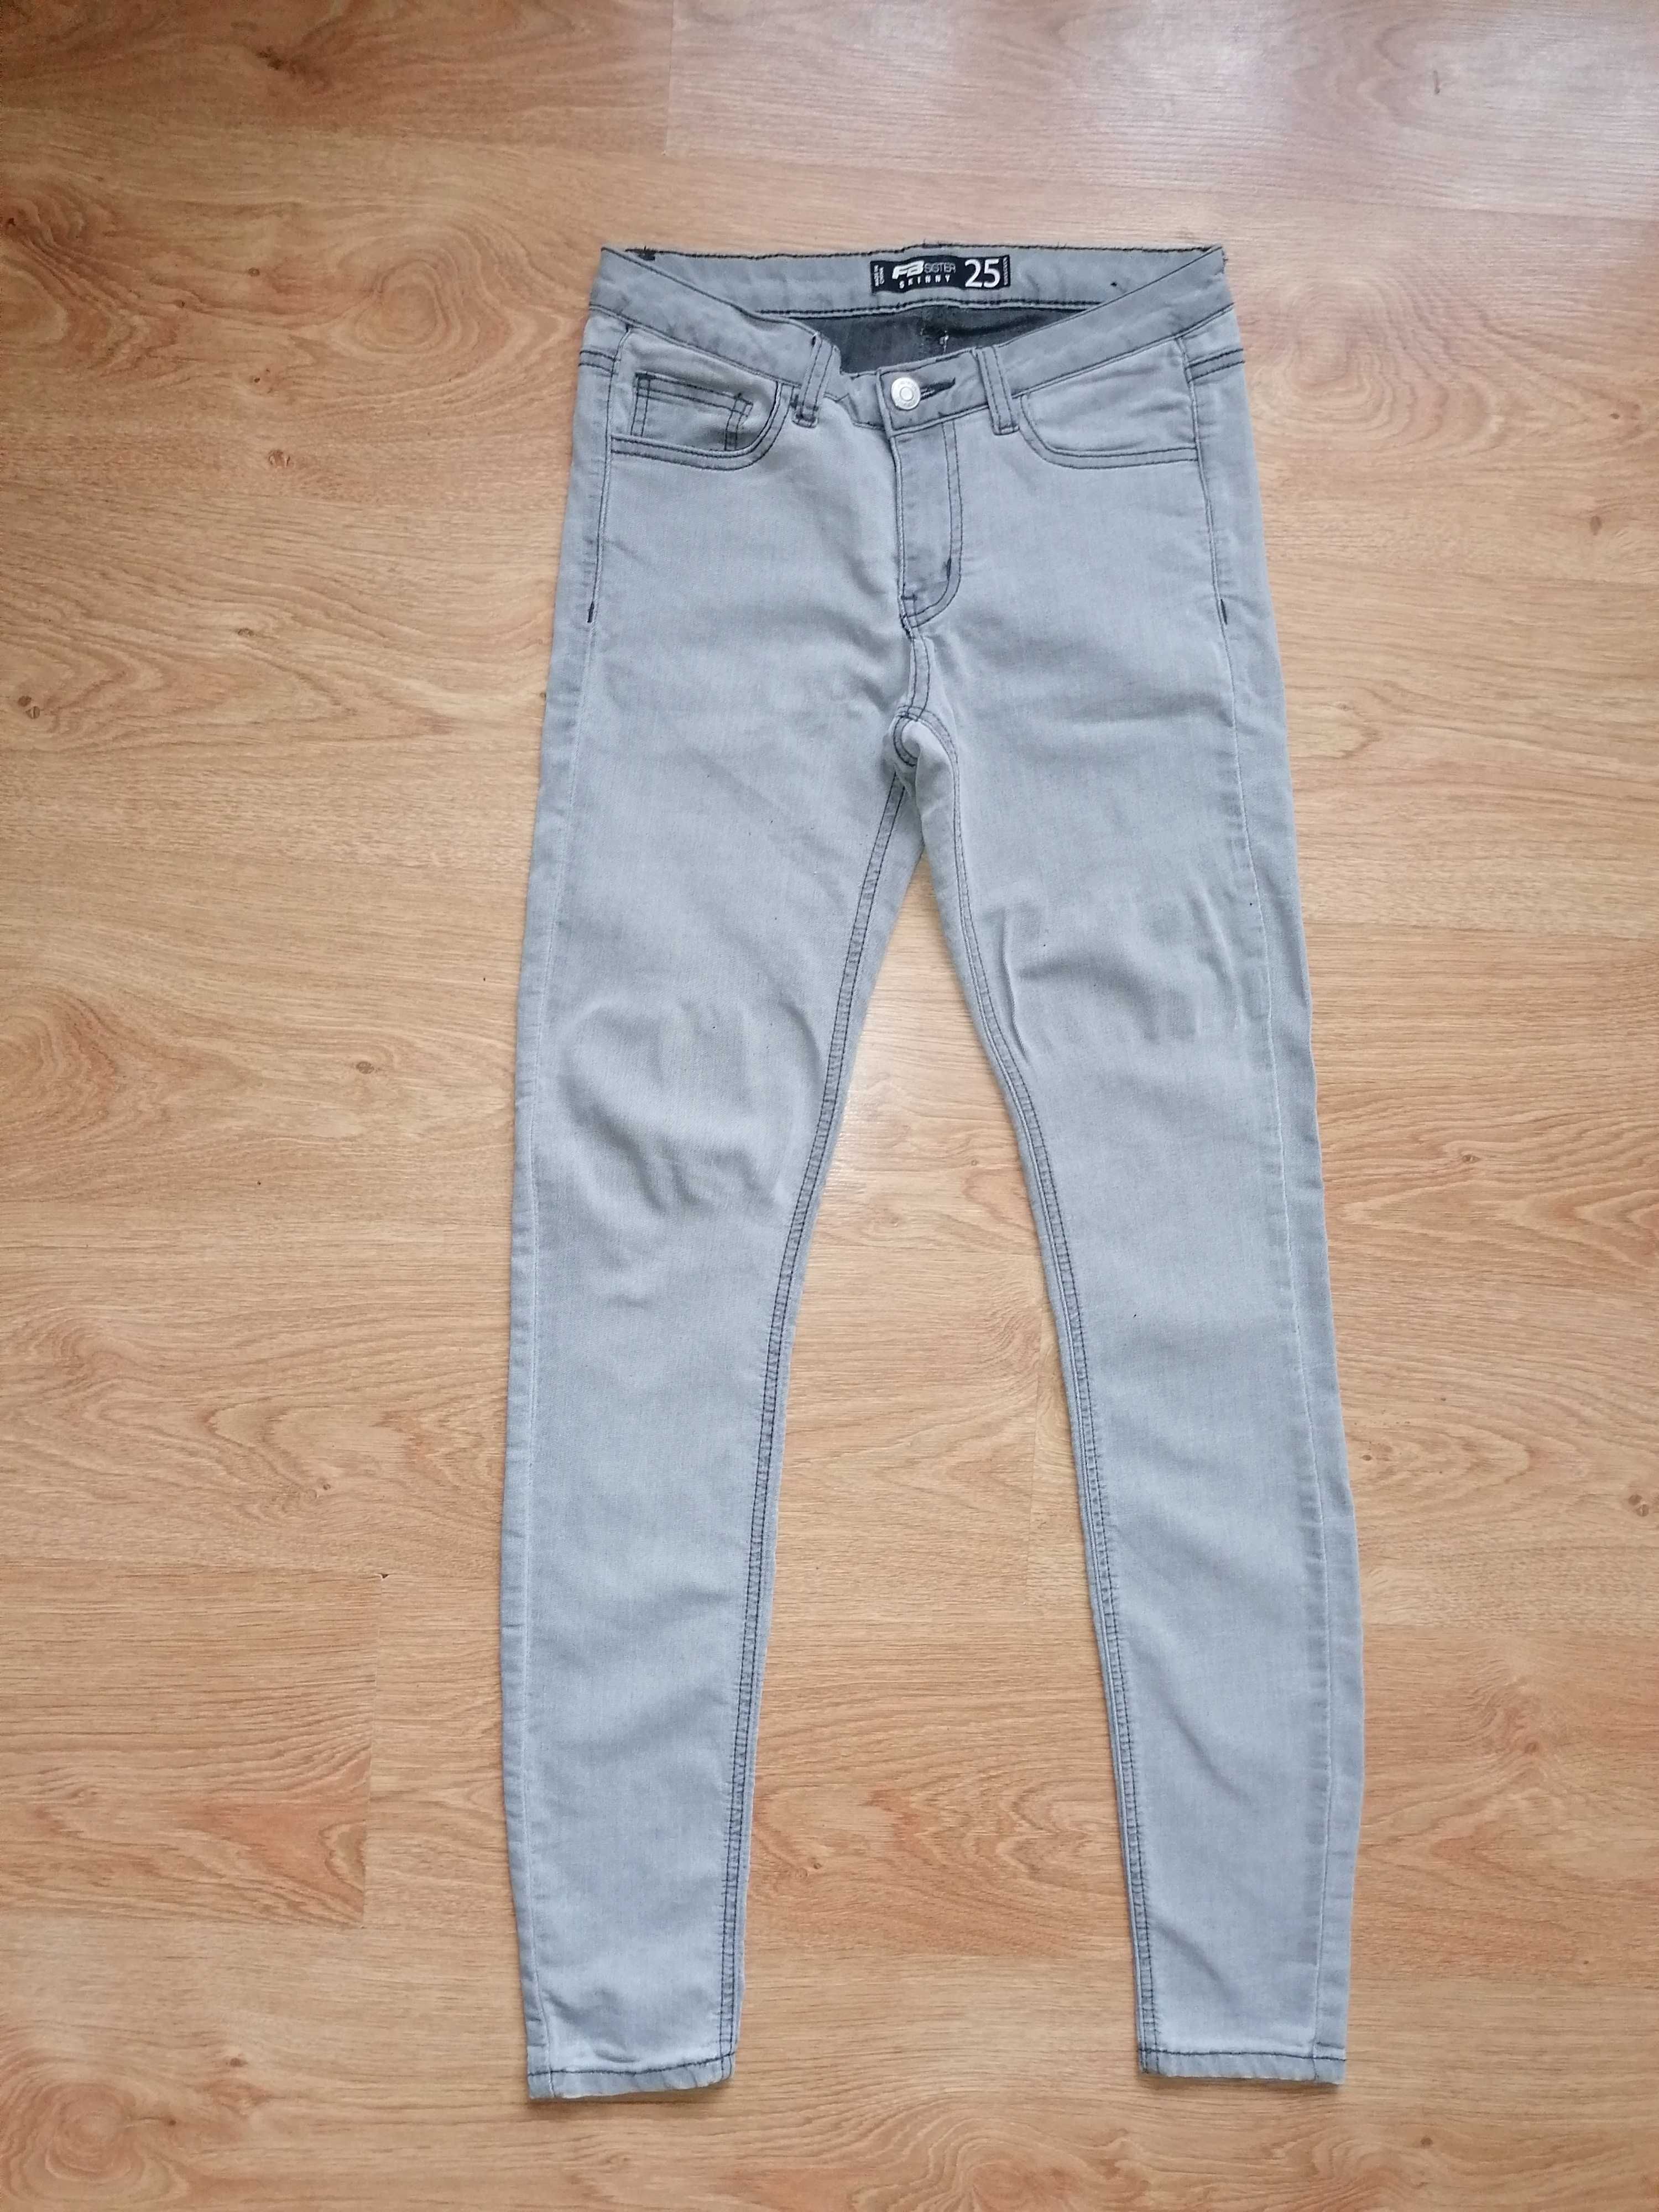 Spodnie jeans FB Sister rozm. 25 (